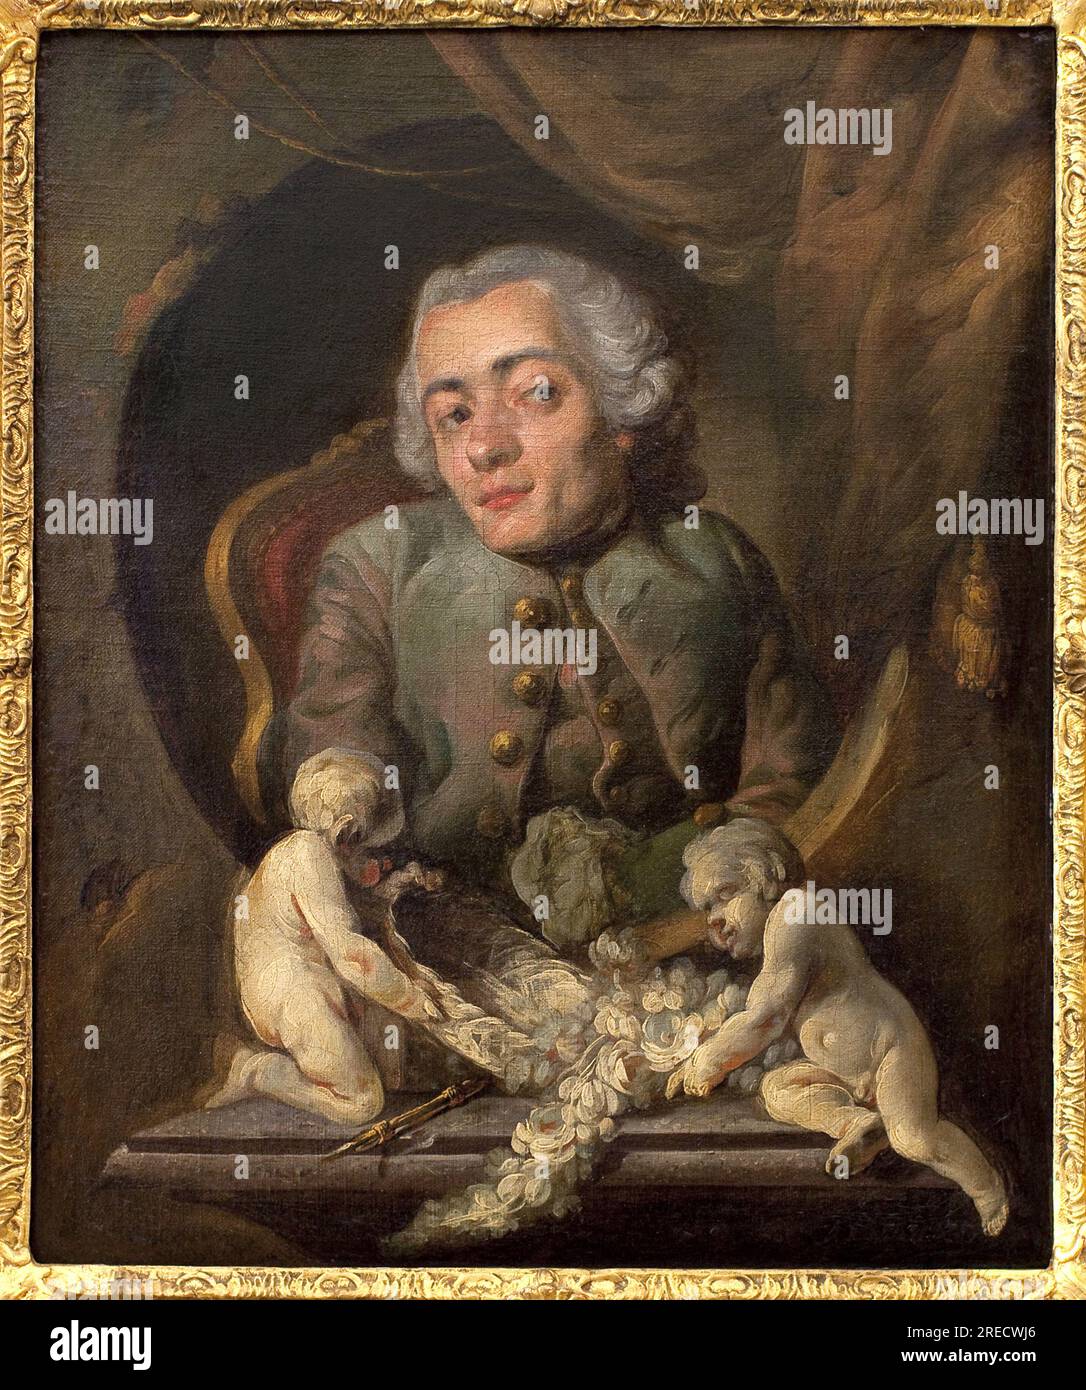 Portrait d'un artiste bossu. Peinture de Gabriel Jacques de Saint Aubin (1724-1780), huile sur toile. Art francais 18e siecle. Musee des Beaux Arts de Rouen. Stock Photo